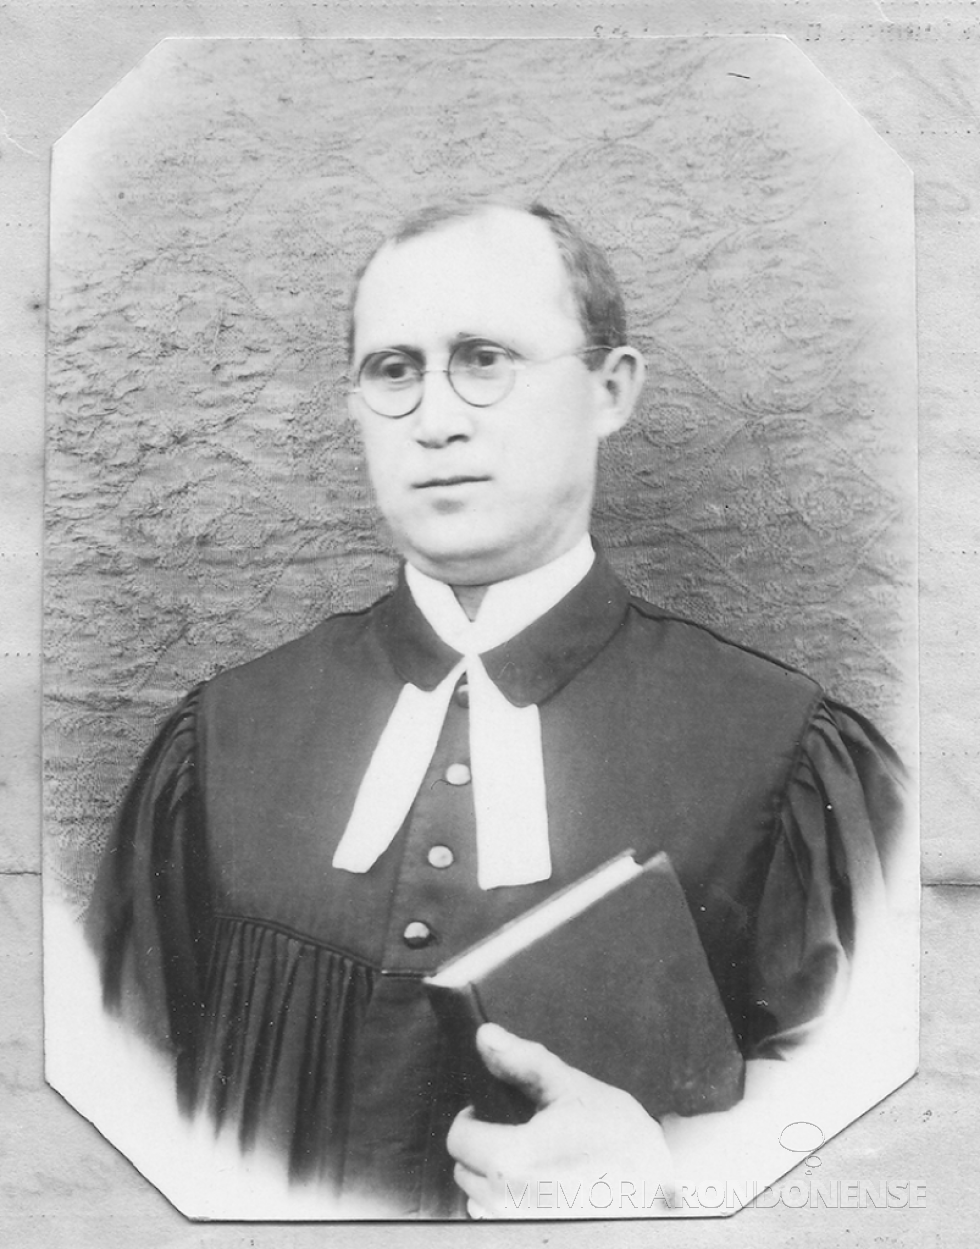 || Reverendo José Beck, primeiro pastor da Igreja Evangélica Luterana do Brasil (IELB) a ser instalado no Estado do Paraná.
Imagem: Acervo IELB - FOTO 2 - 